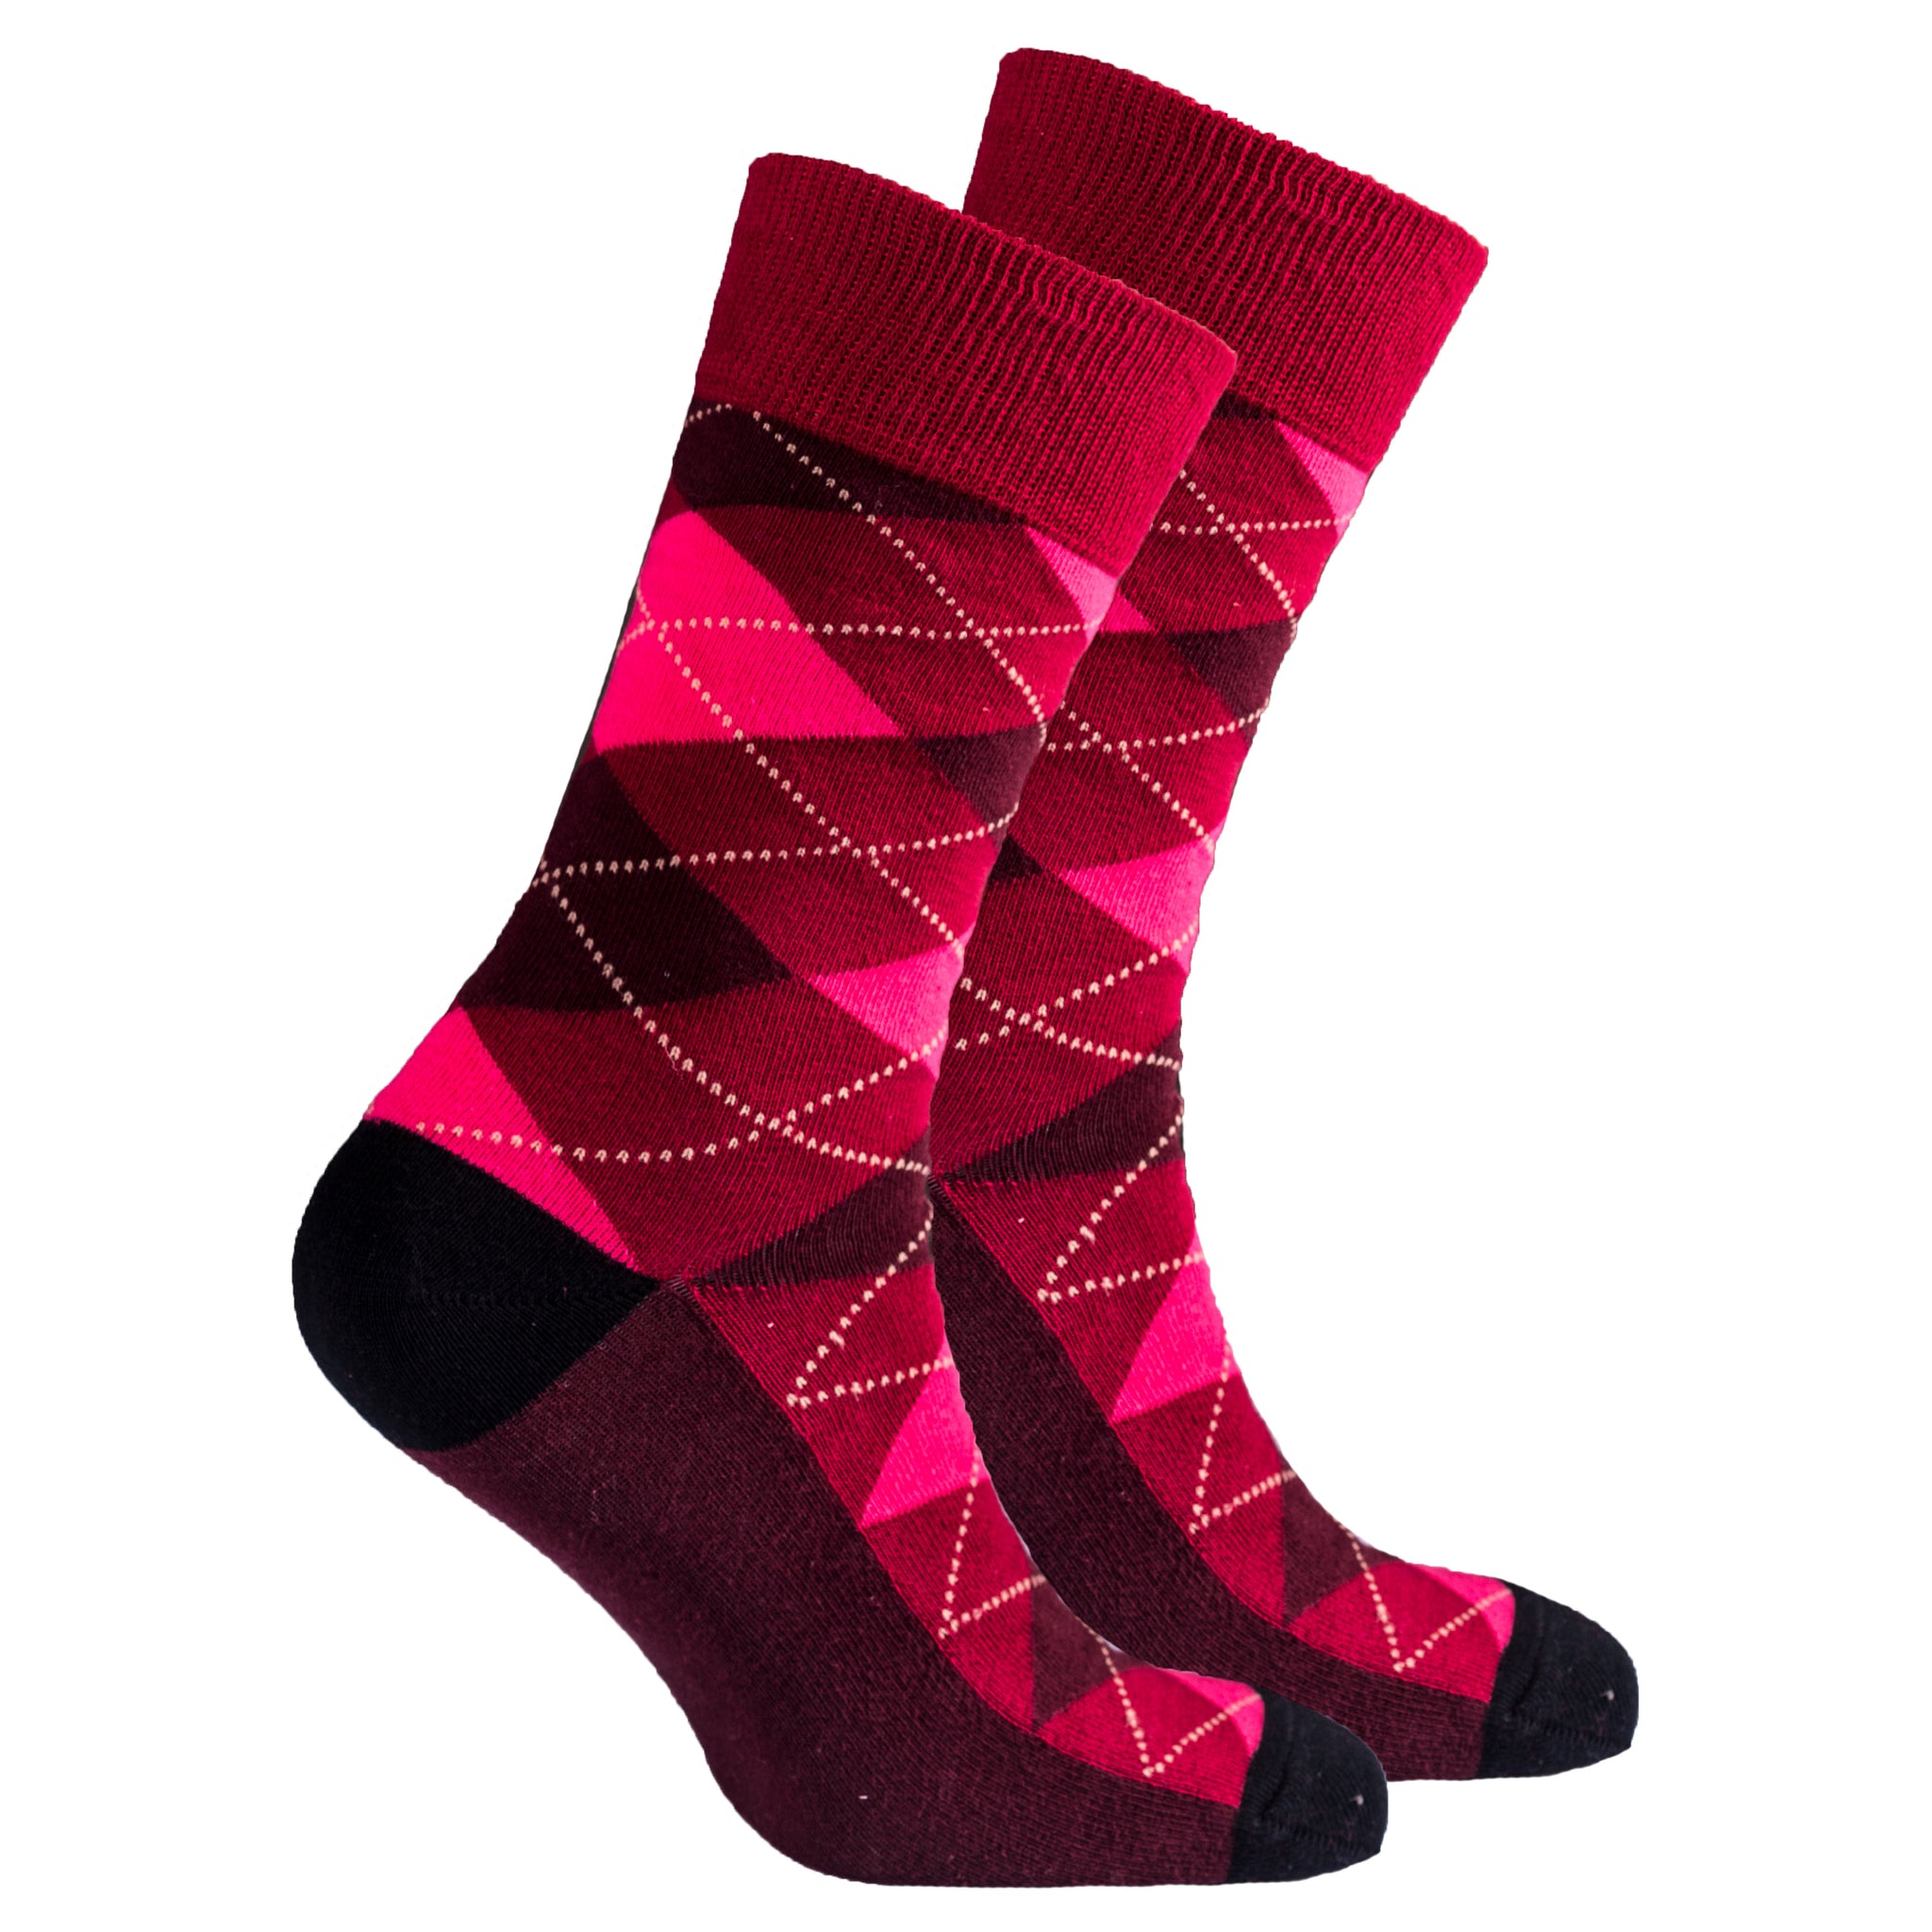 Men's Scarlet Argyle Socks